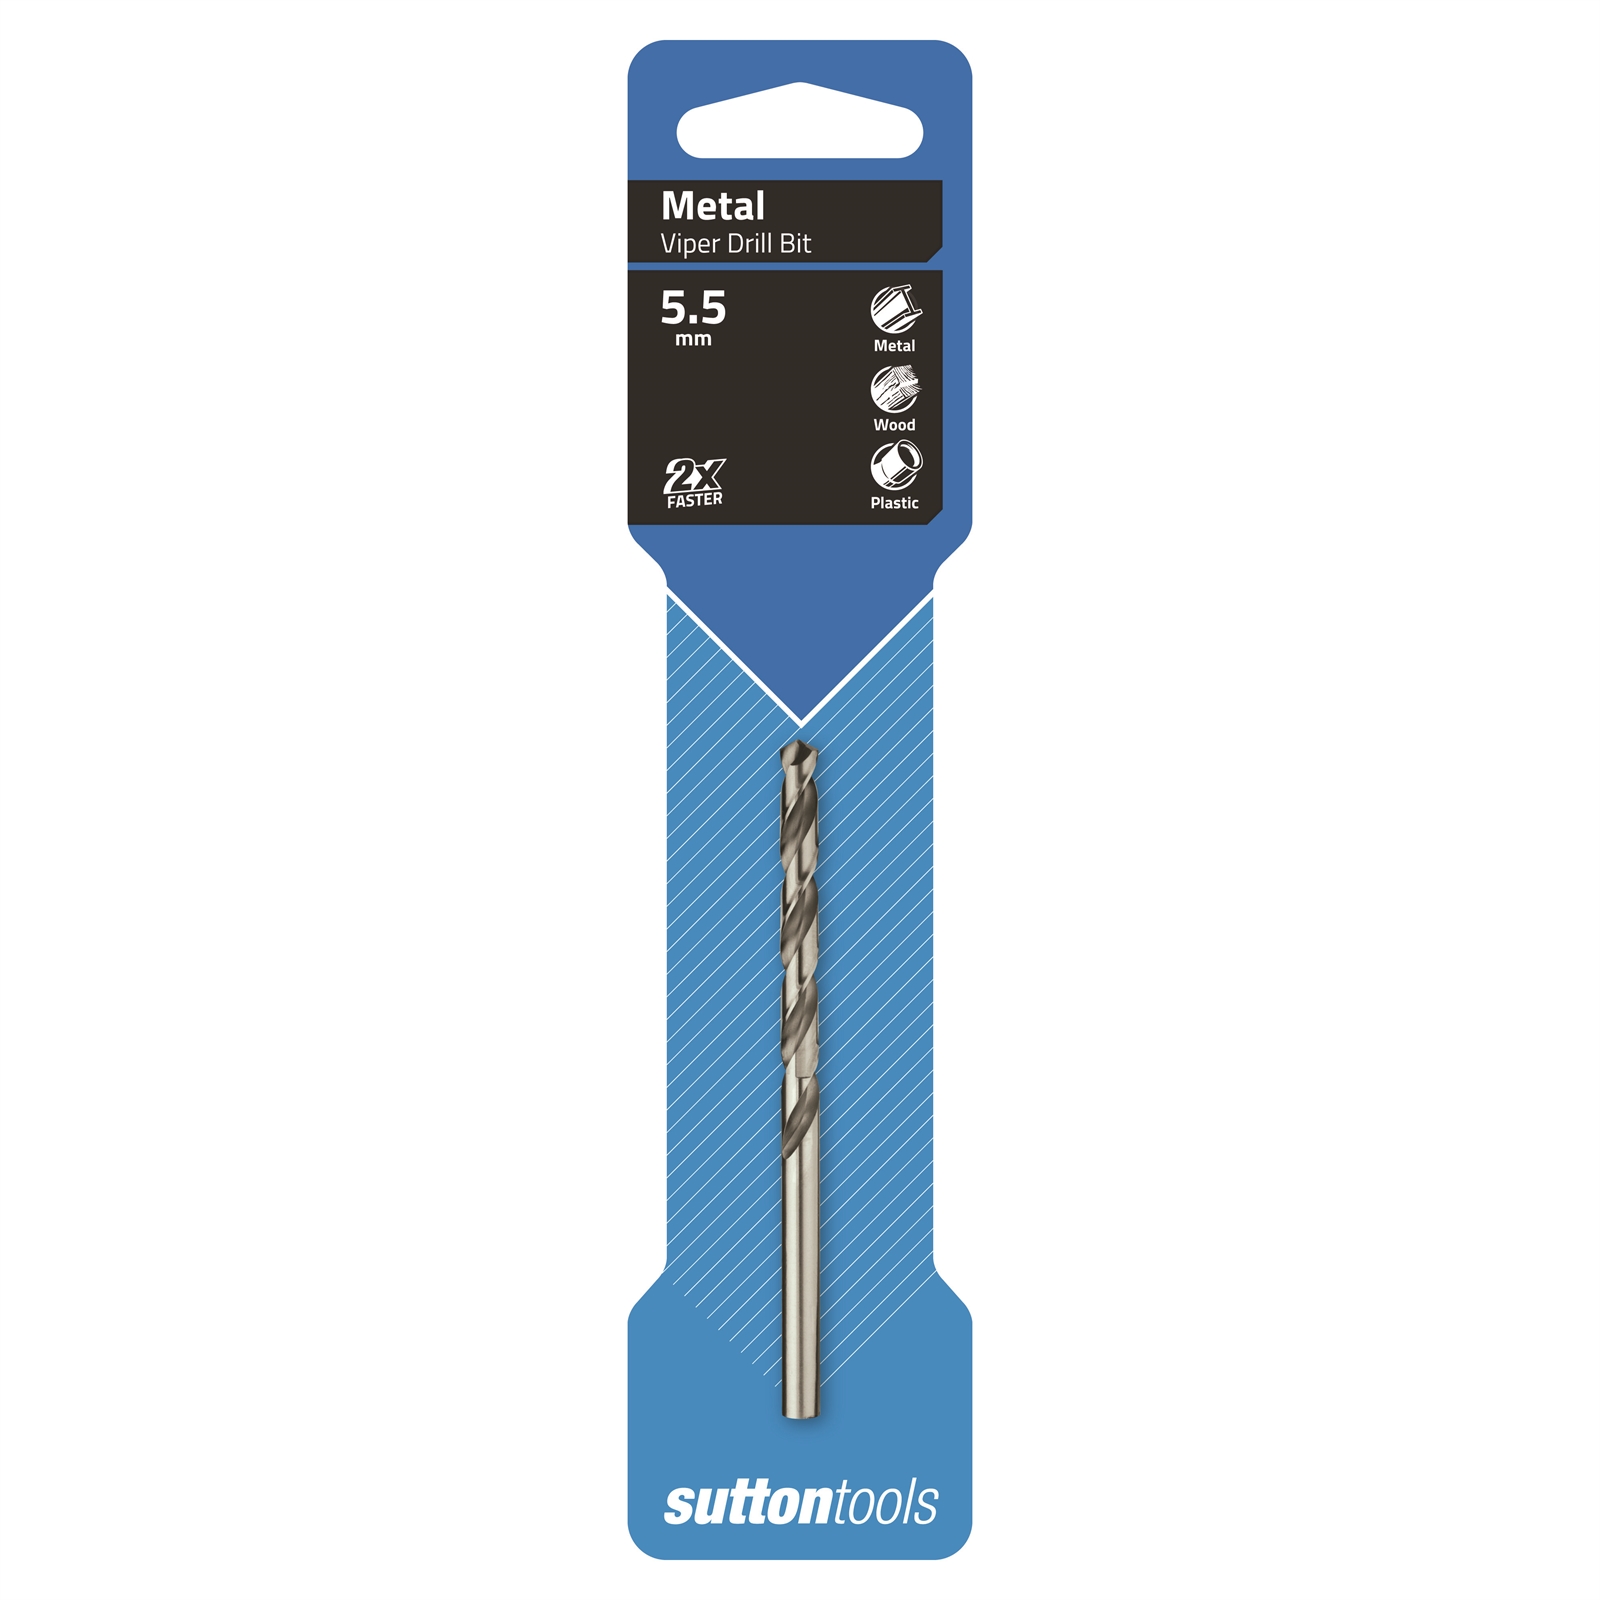 Sutton Tools 5.5mm HSS Metric Viper Drill Bit